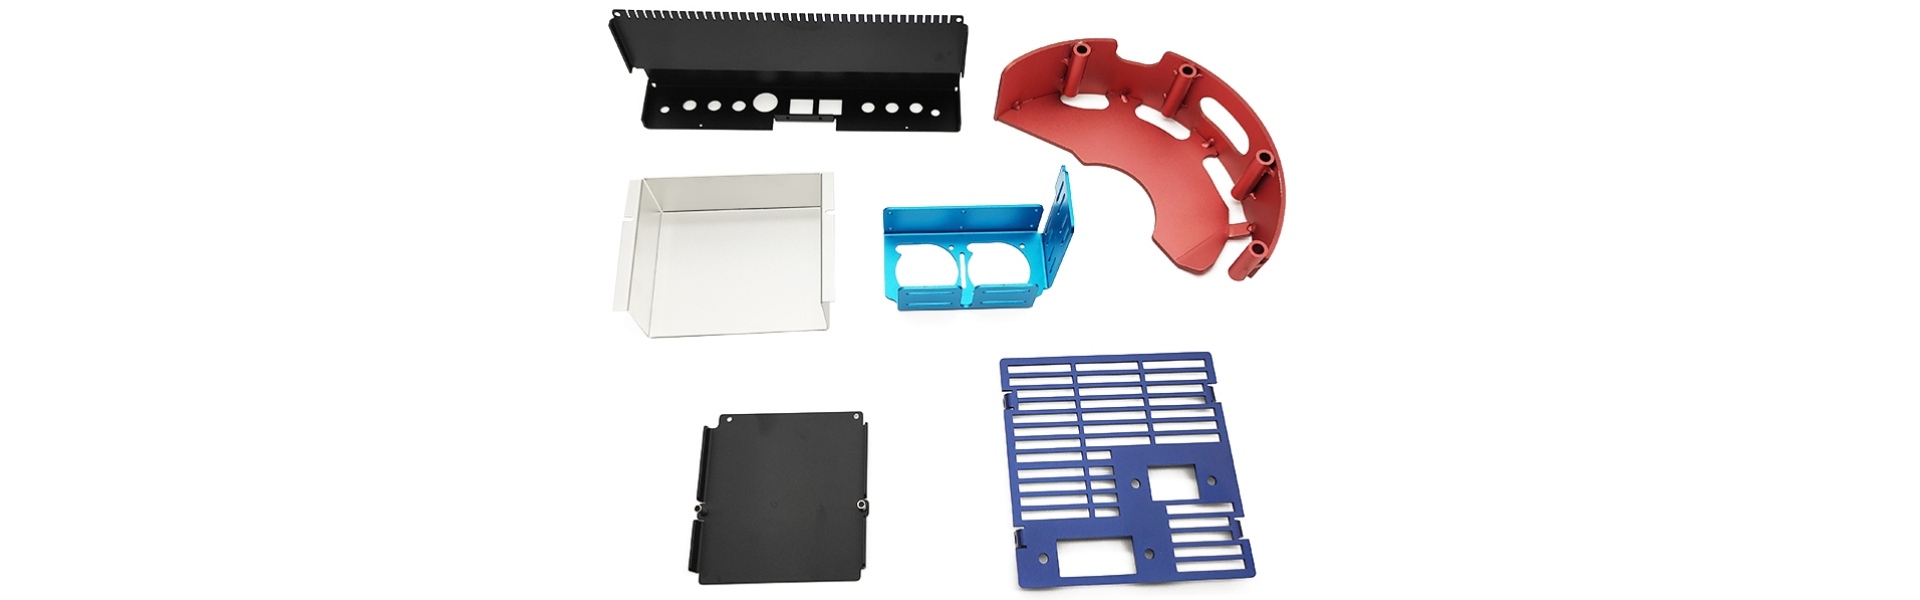 Chế tạo kim loại tấm, các bộ phận dập kim loại, dịch vụ gia công CNC,Xucheng Precision Sheet metal Products Co., LTD